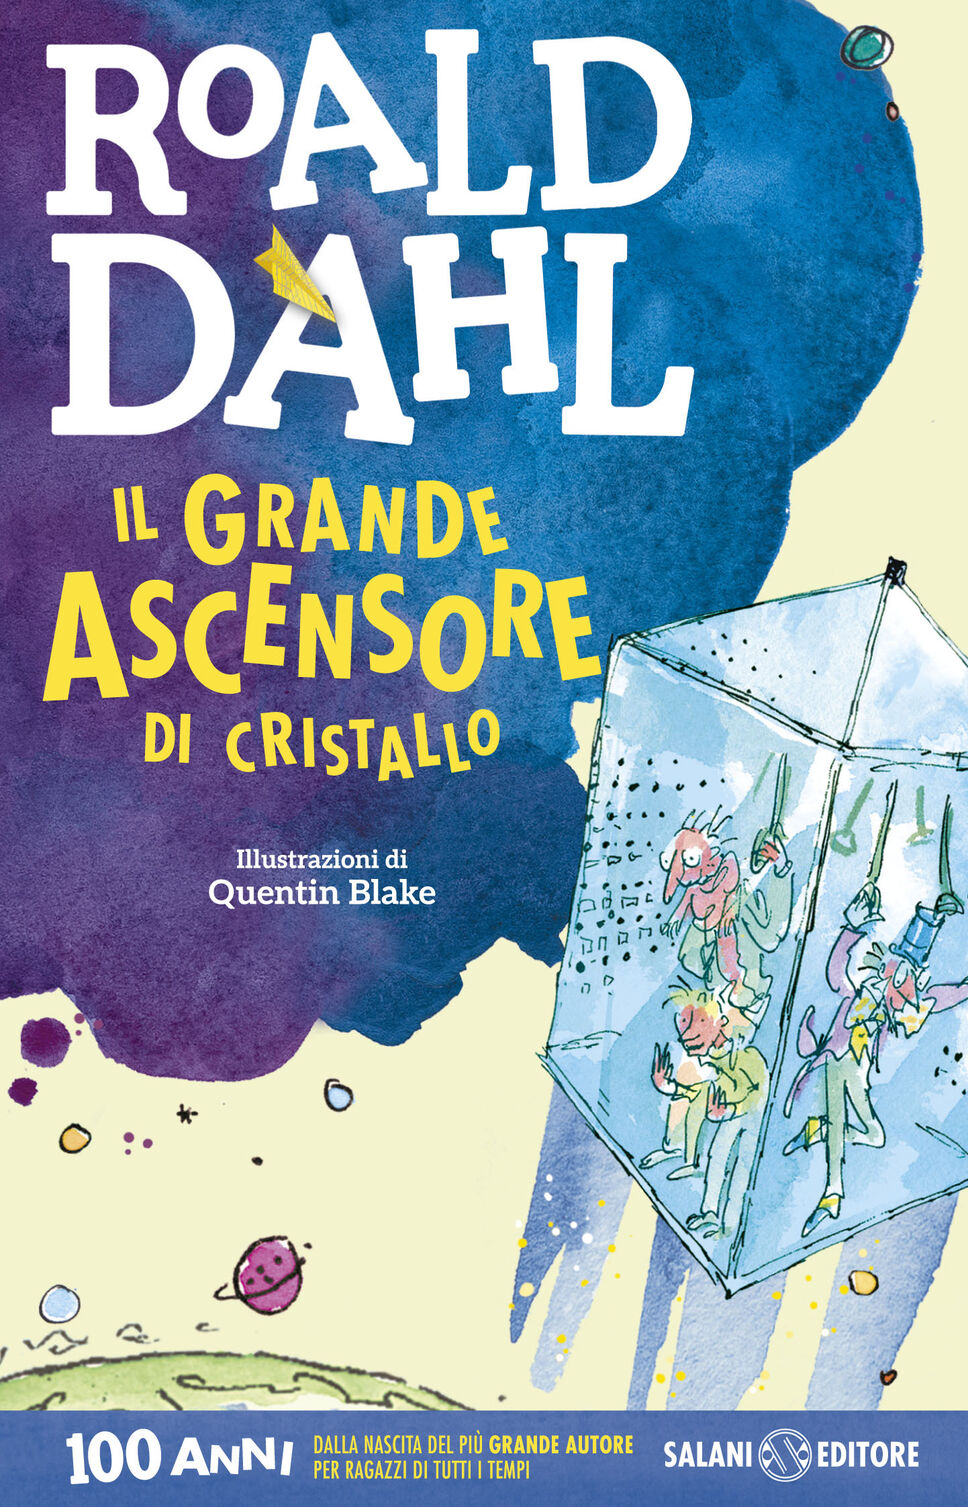 Il Grande Ascensore di Cristallo – Roald Dahl 1972 – Pagina dopo Pagina